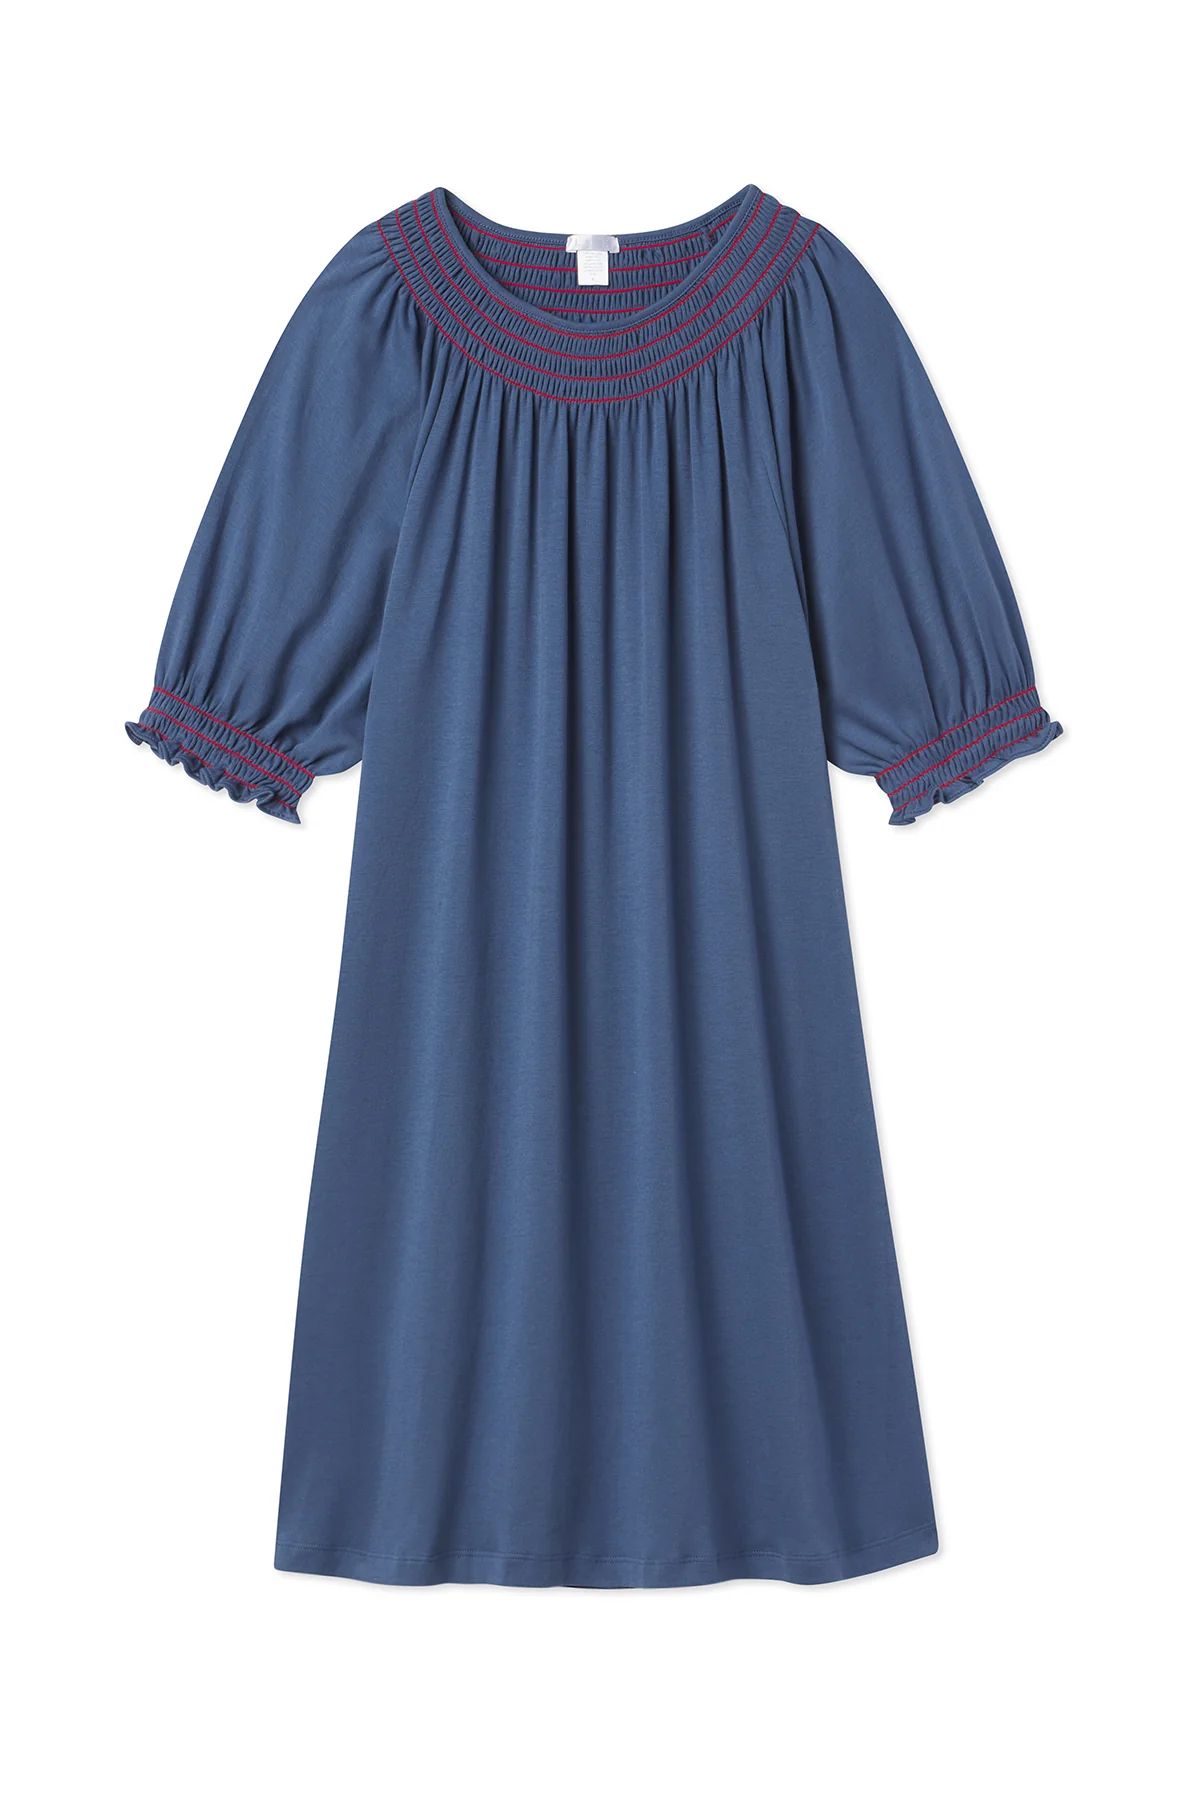 Pima Smocked Nightgown in Navy | Lake Pajamas